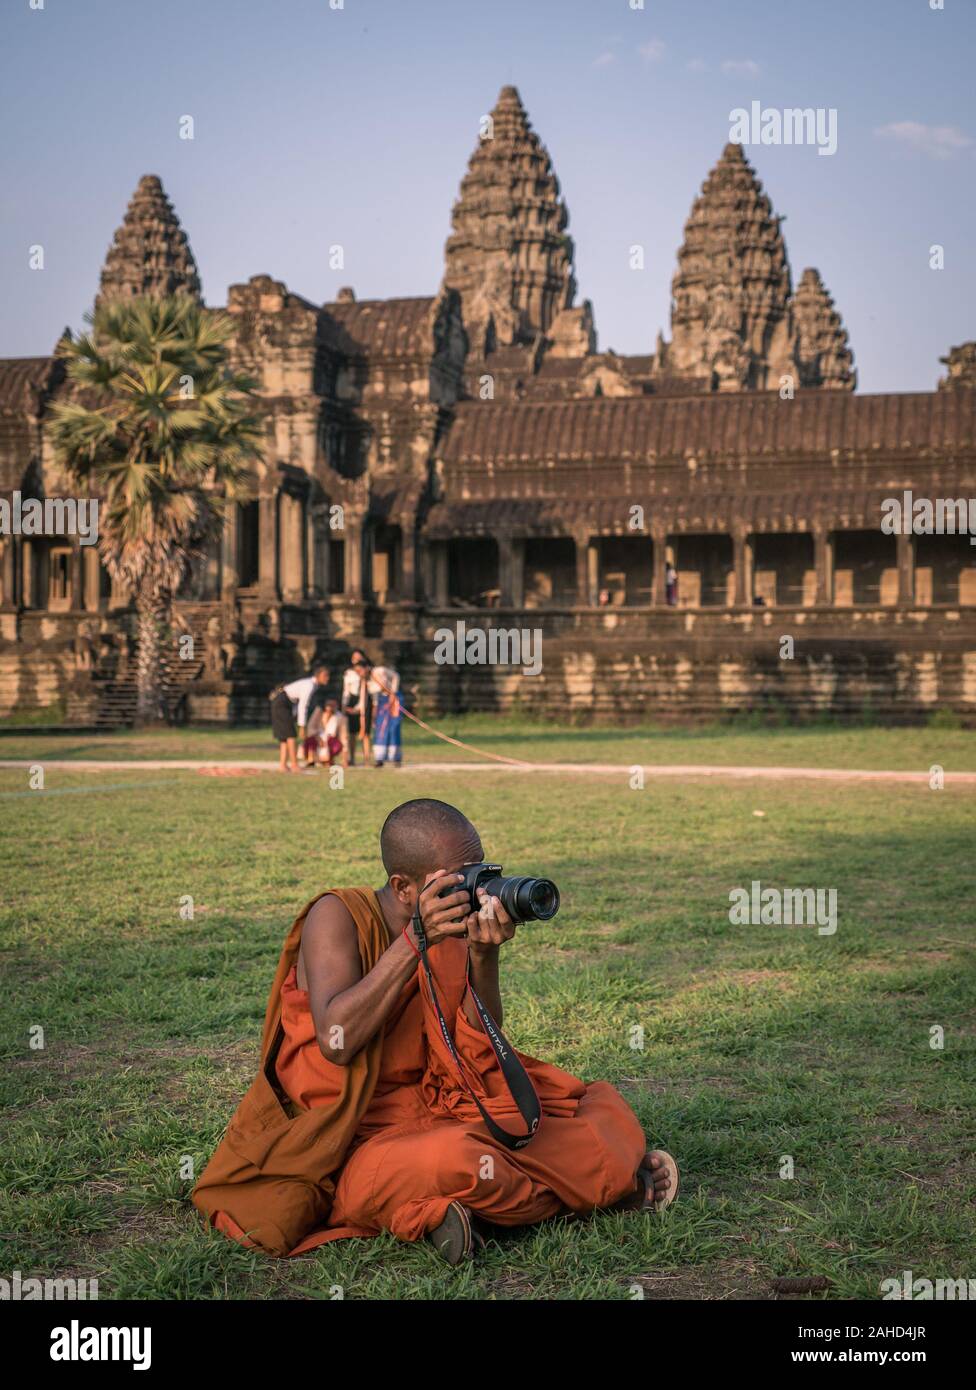 Buddhistischer Mönch in traditioneller orangefarbener Robe, der Fotos vor dem Tempel von Angkor Wat, Siem Reap, Kambodscha aufgenommen hat Stockfoto